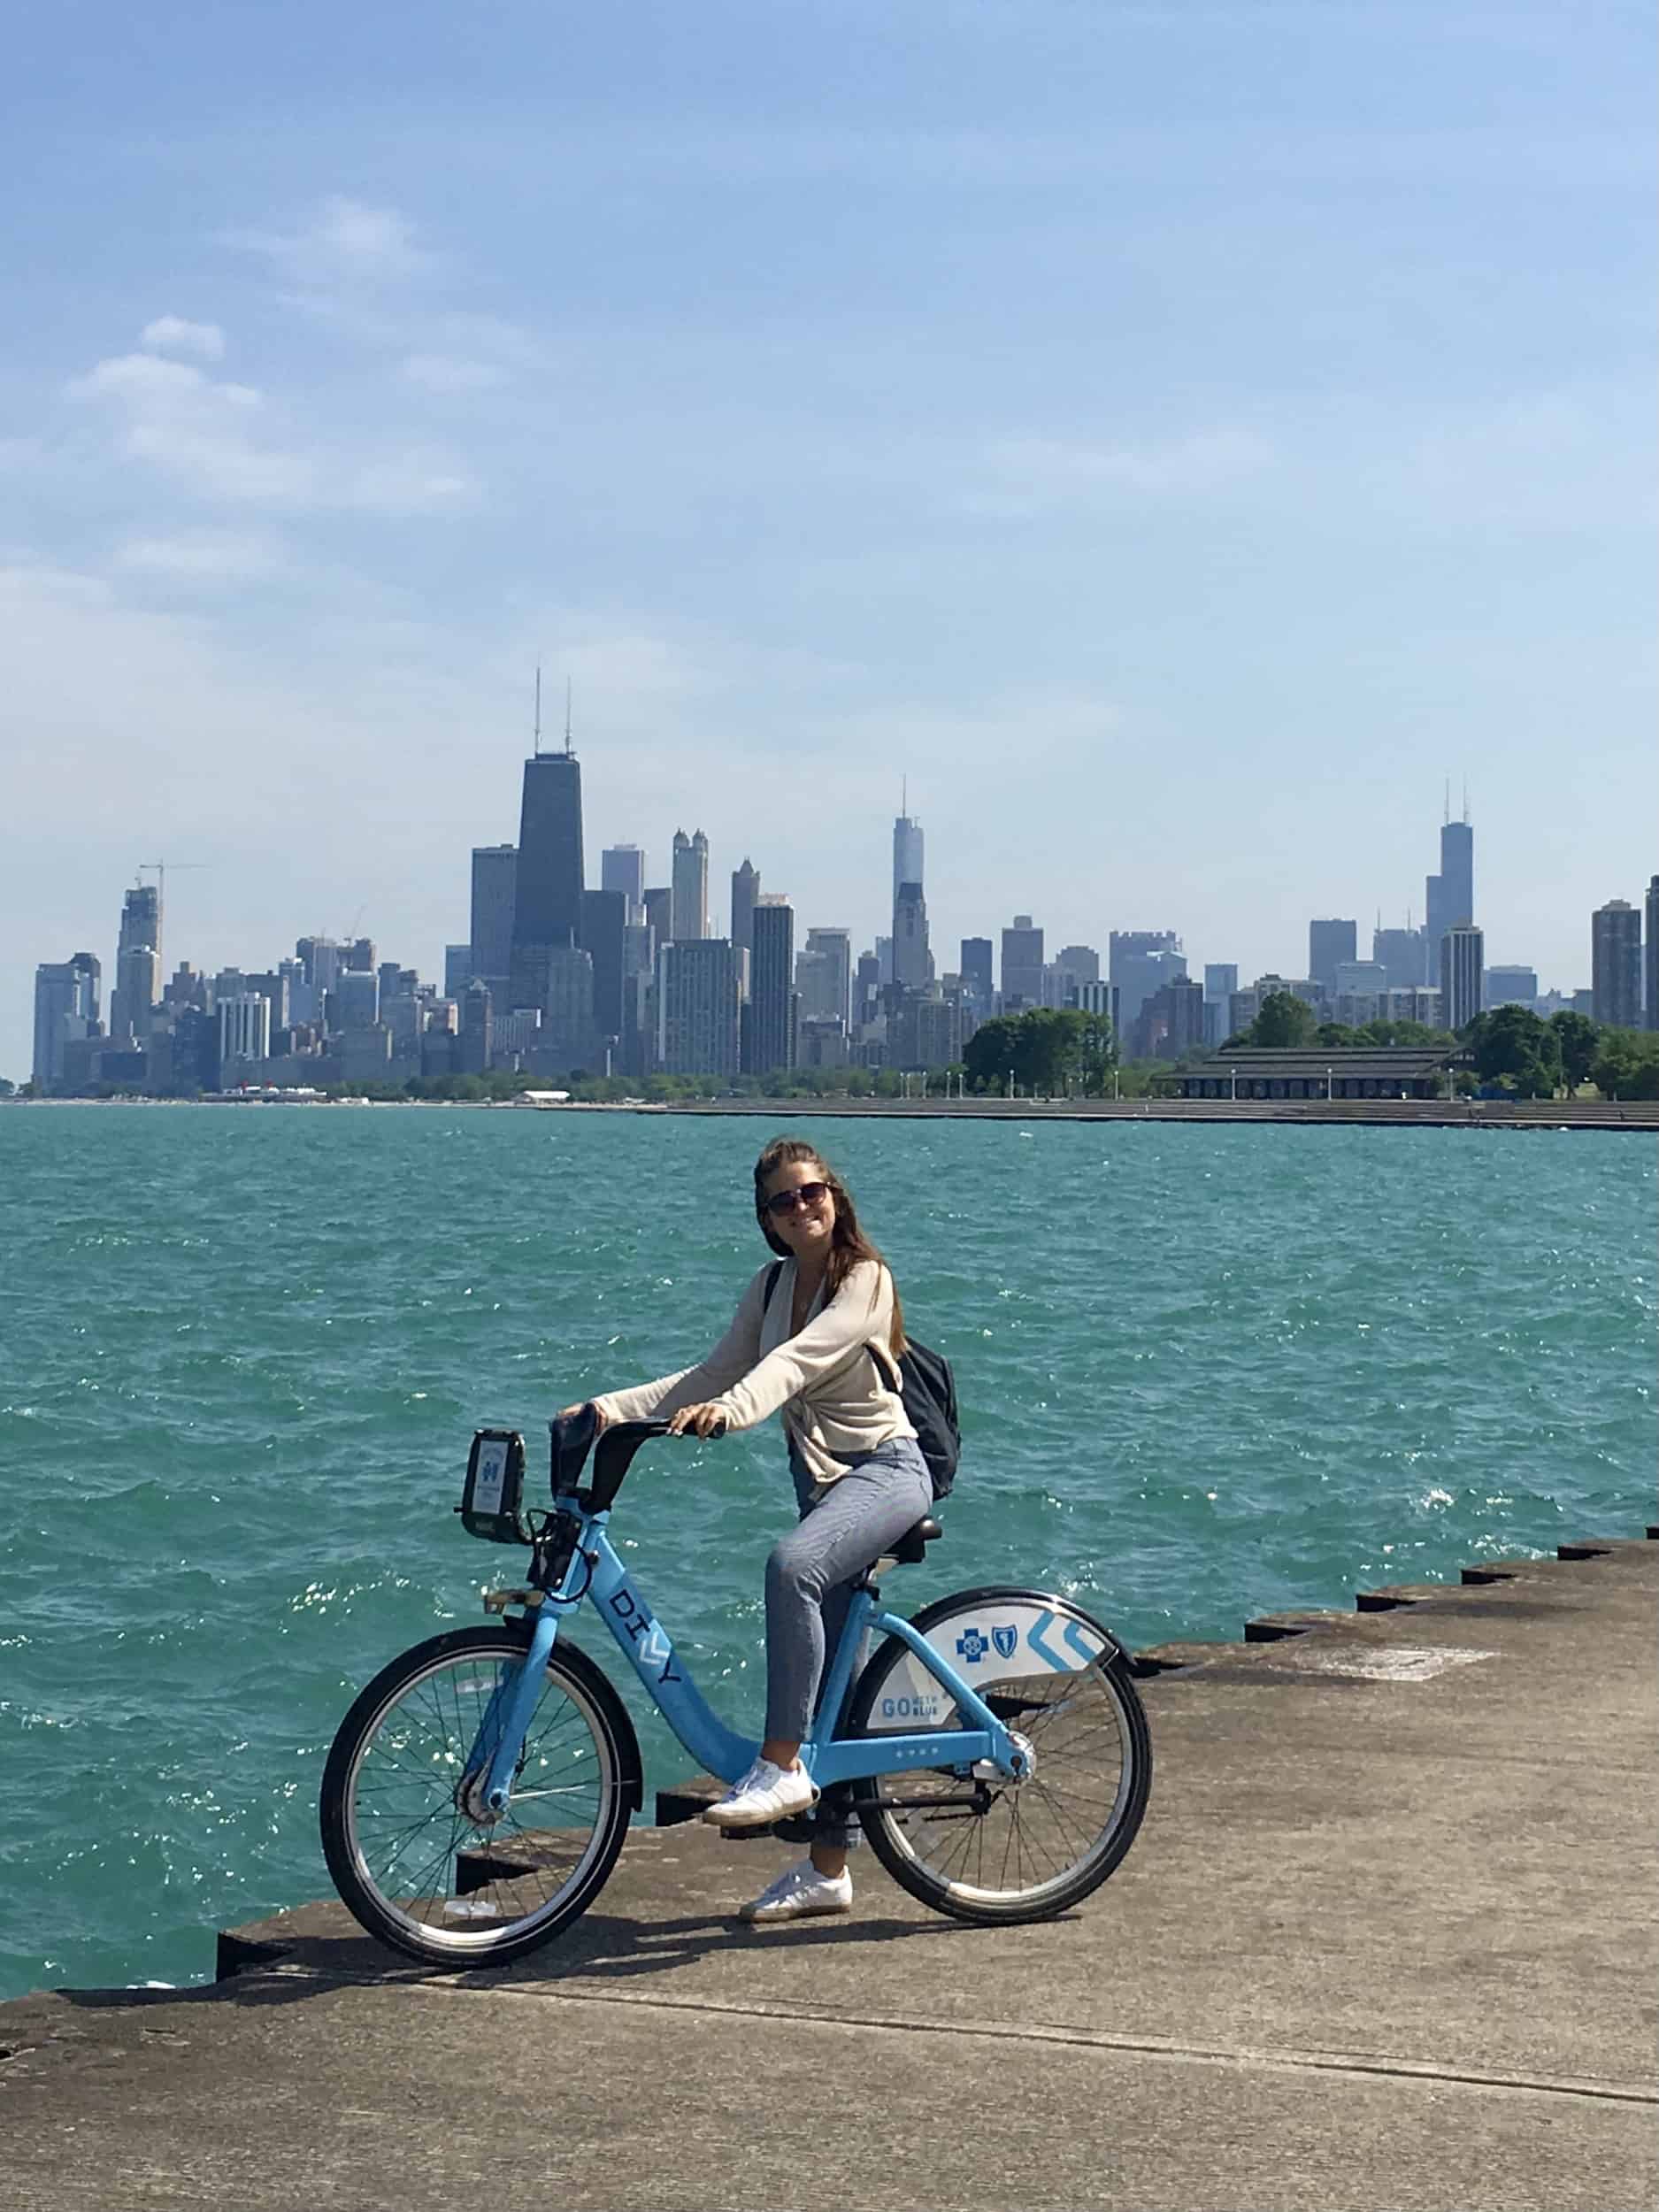 chicago summer activities: bike riding near lake michigan